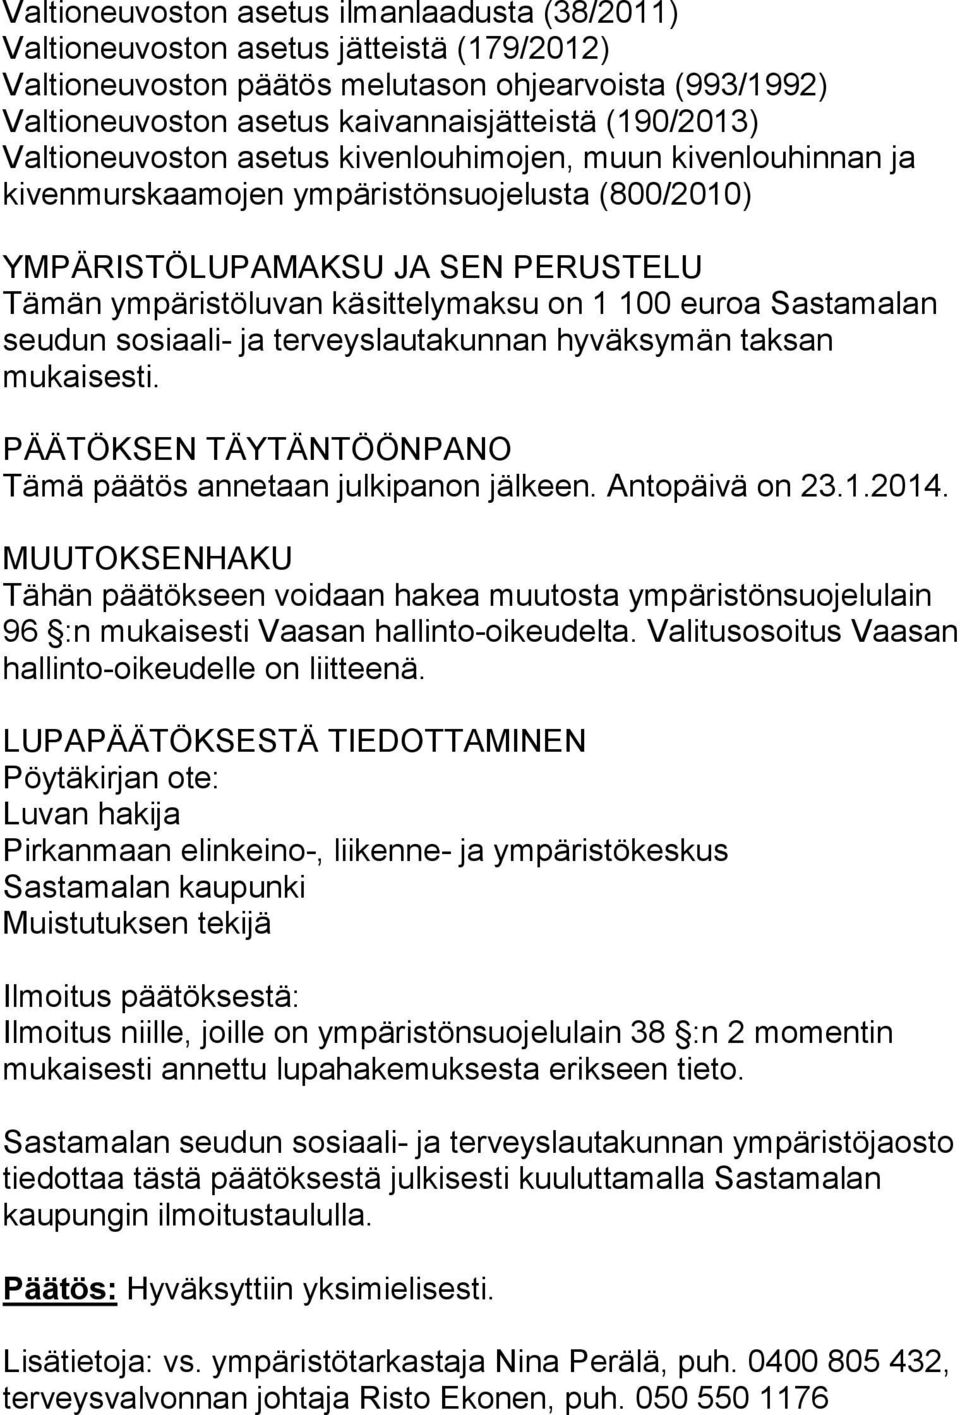 1 100 euroa Sastamalan seudun sosiaali- ja terveyslautakunnan hyväksymän taksan mukaisesti. PÄÄTÖKSEN TÄYTÄNTÖÖNPANO Tämä päätös annetaan julkipanon jälkeen. Antopäivä on 23.1.2014.